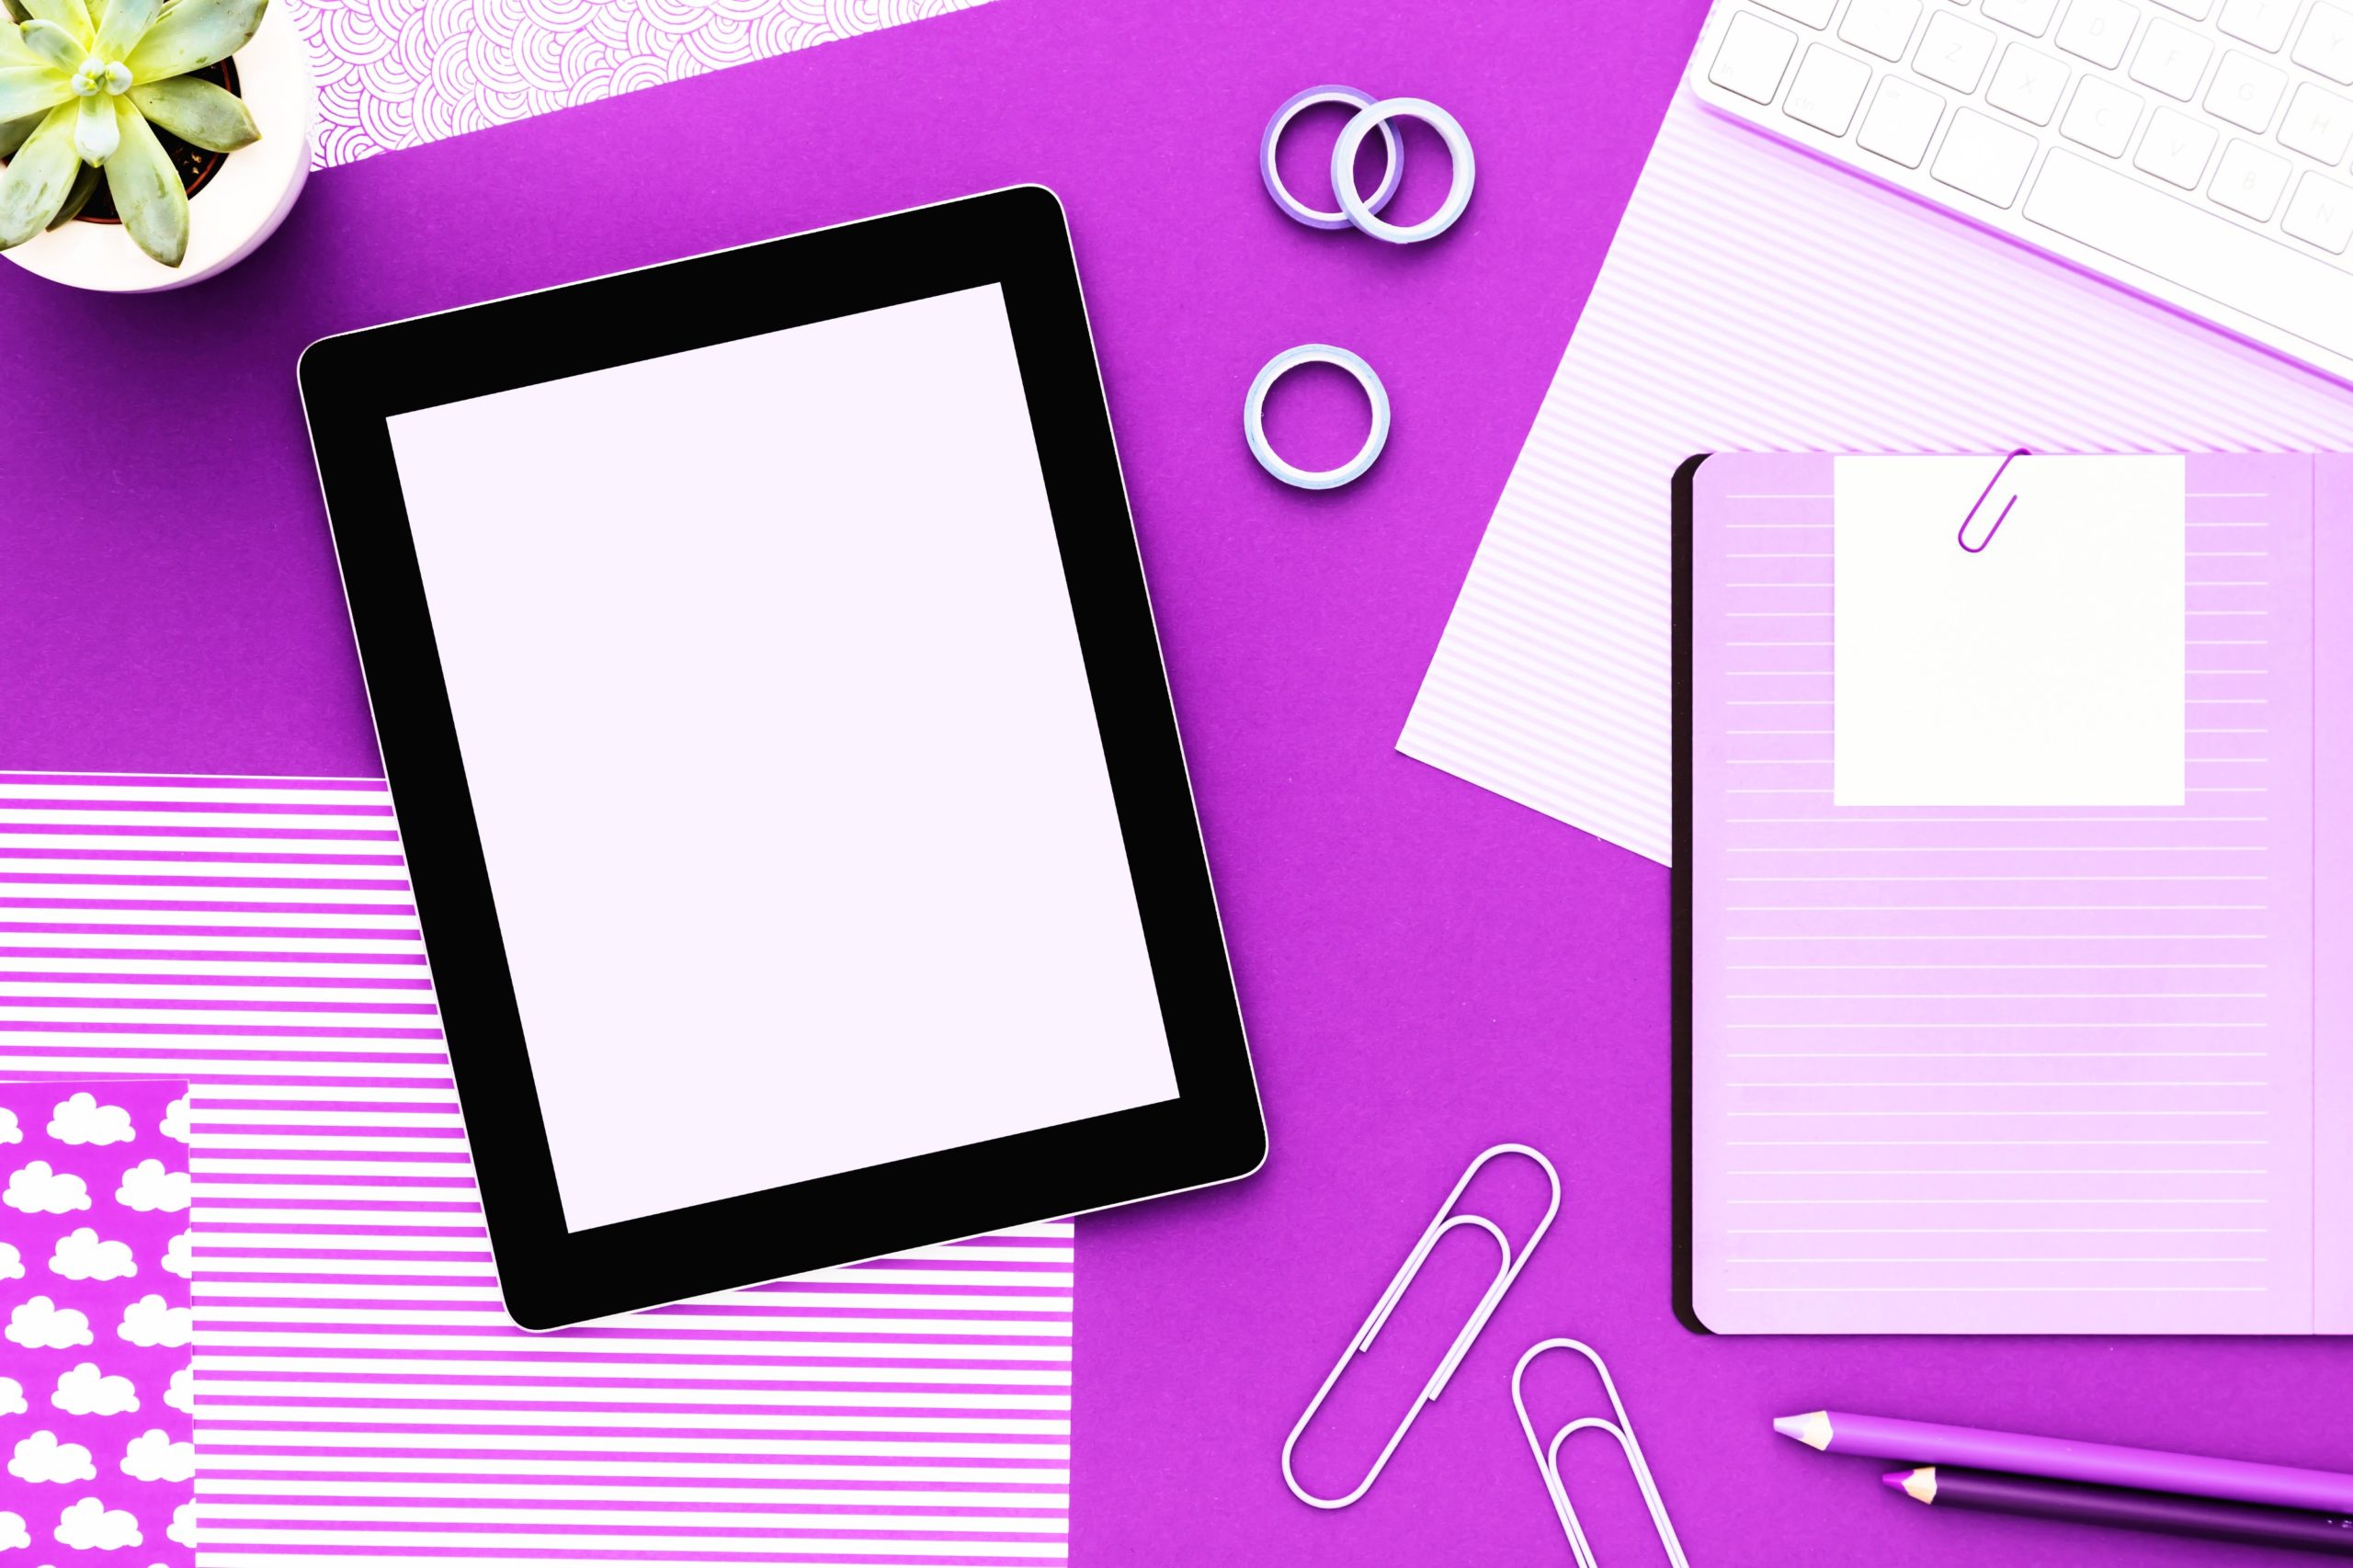 <img src="purple.jpg" alt="purple ipad and notebook"/> 